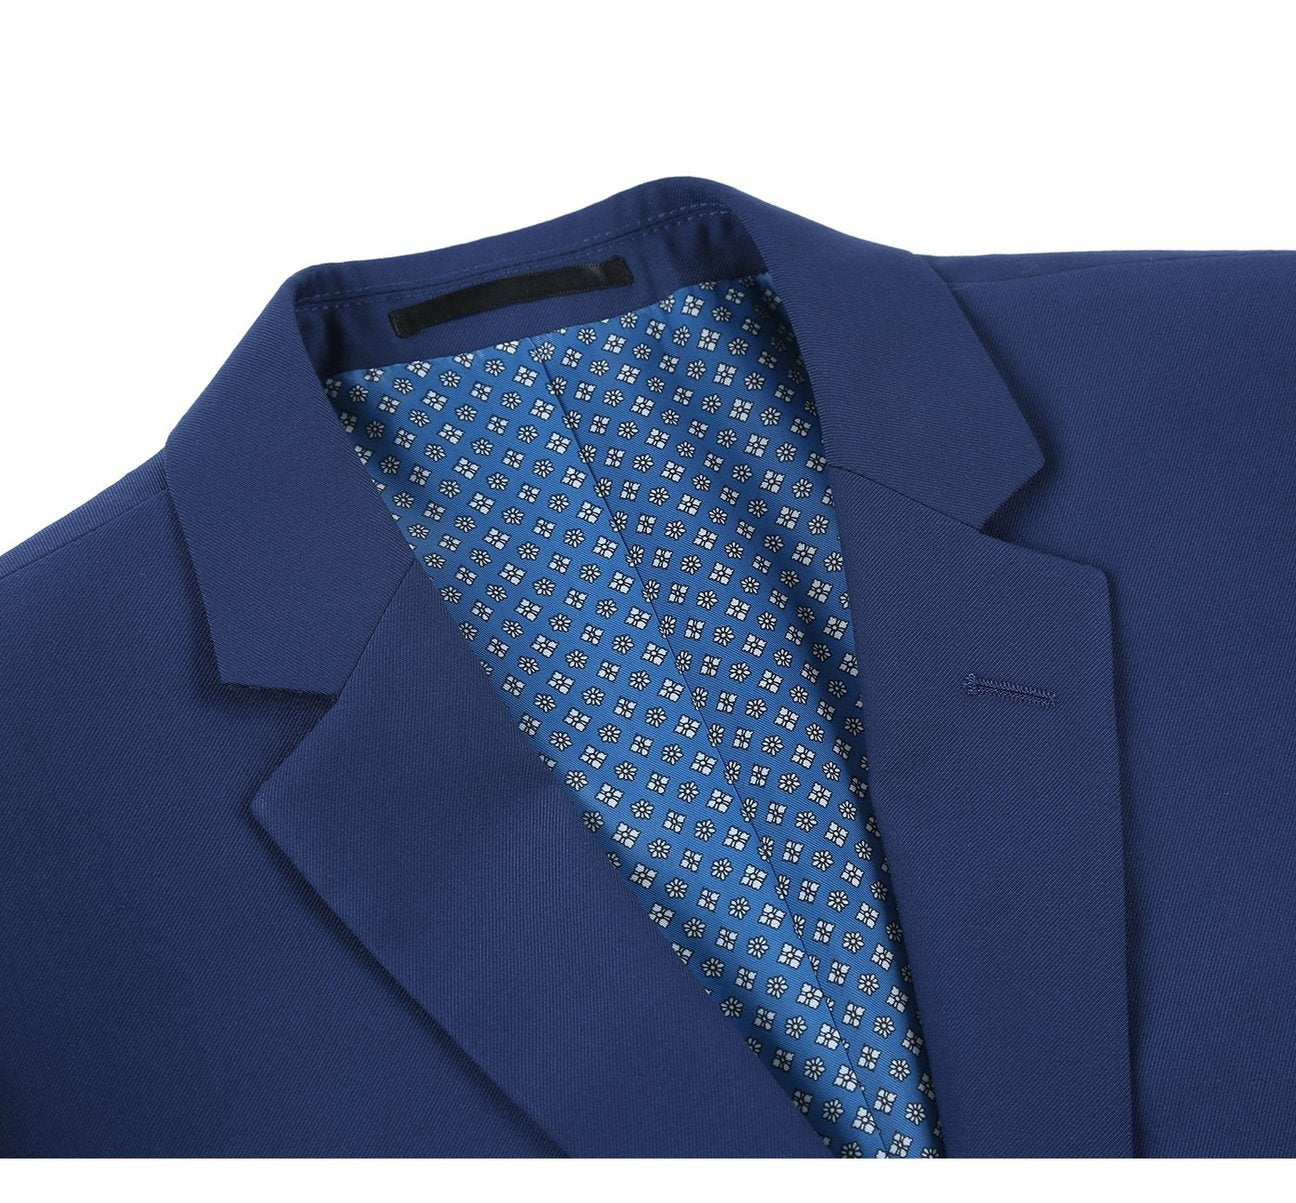 RENOIR Royal Blue 2-Piece Classic Fit Single Breasted Notch Lapel Suit 201-20